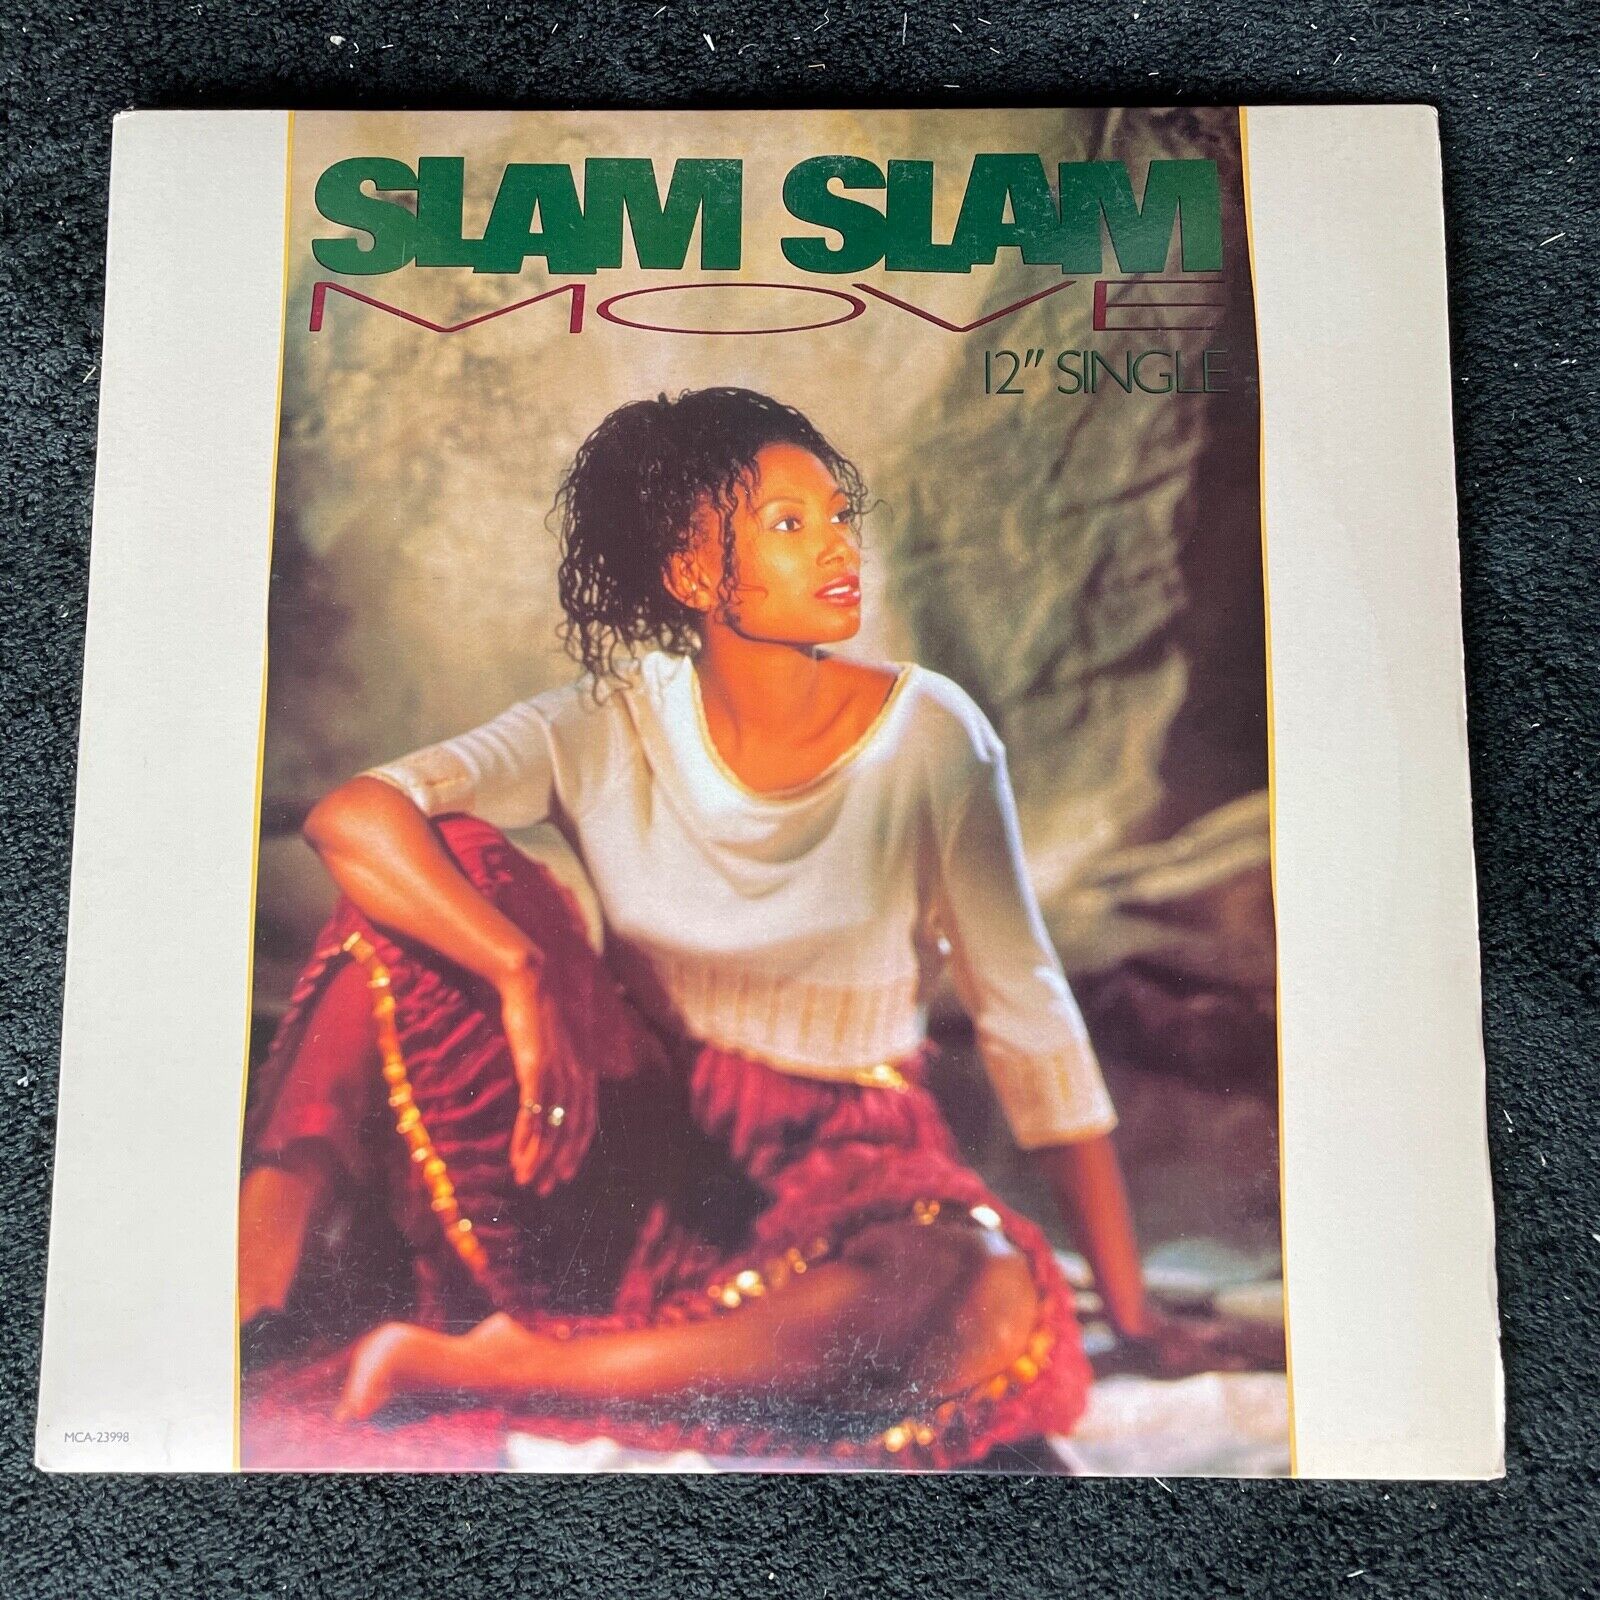 Slam Slam – Move (3 Tracks) Promo 12" Single - MCA Records MCA-23998 - 1990 VGC